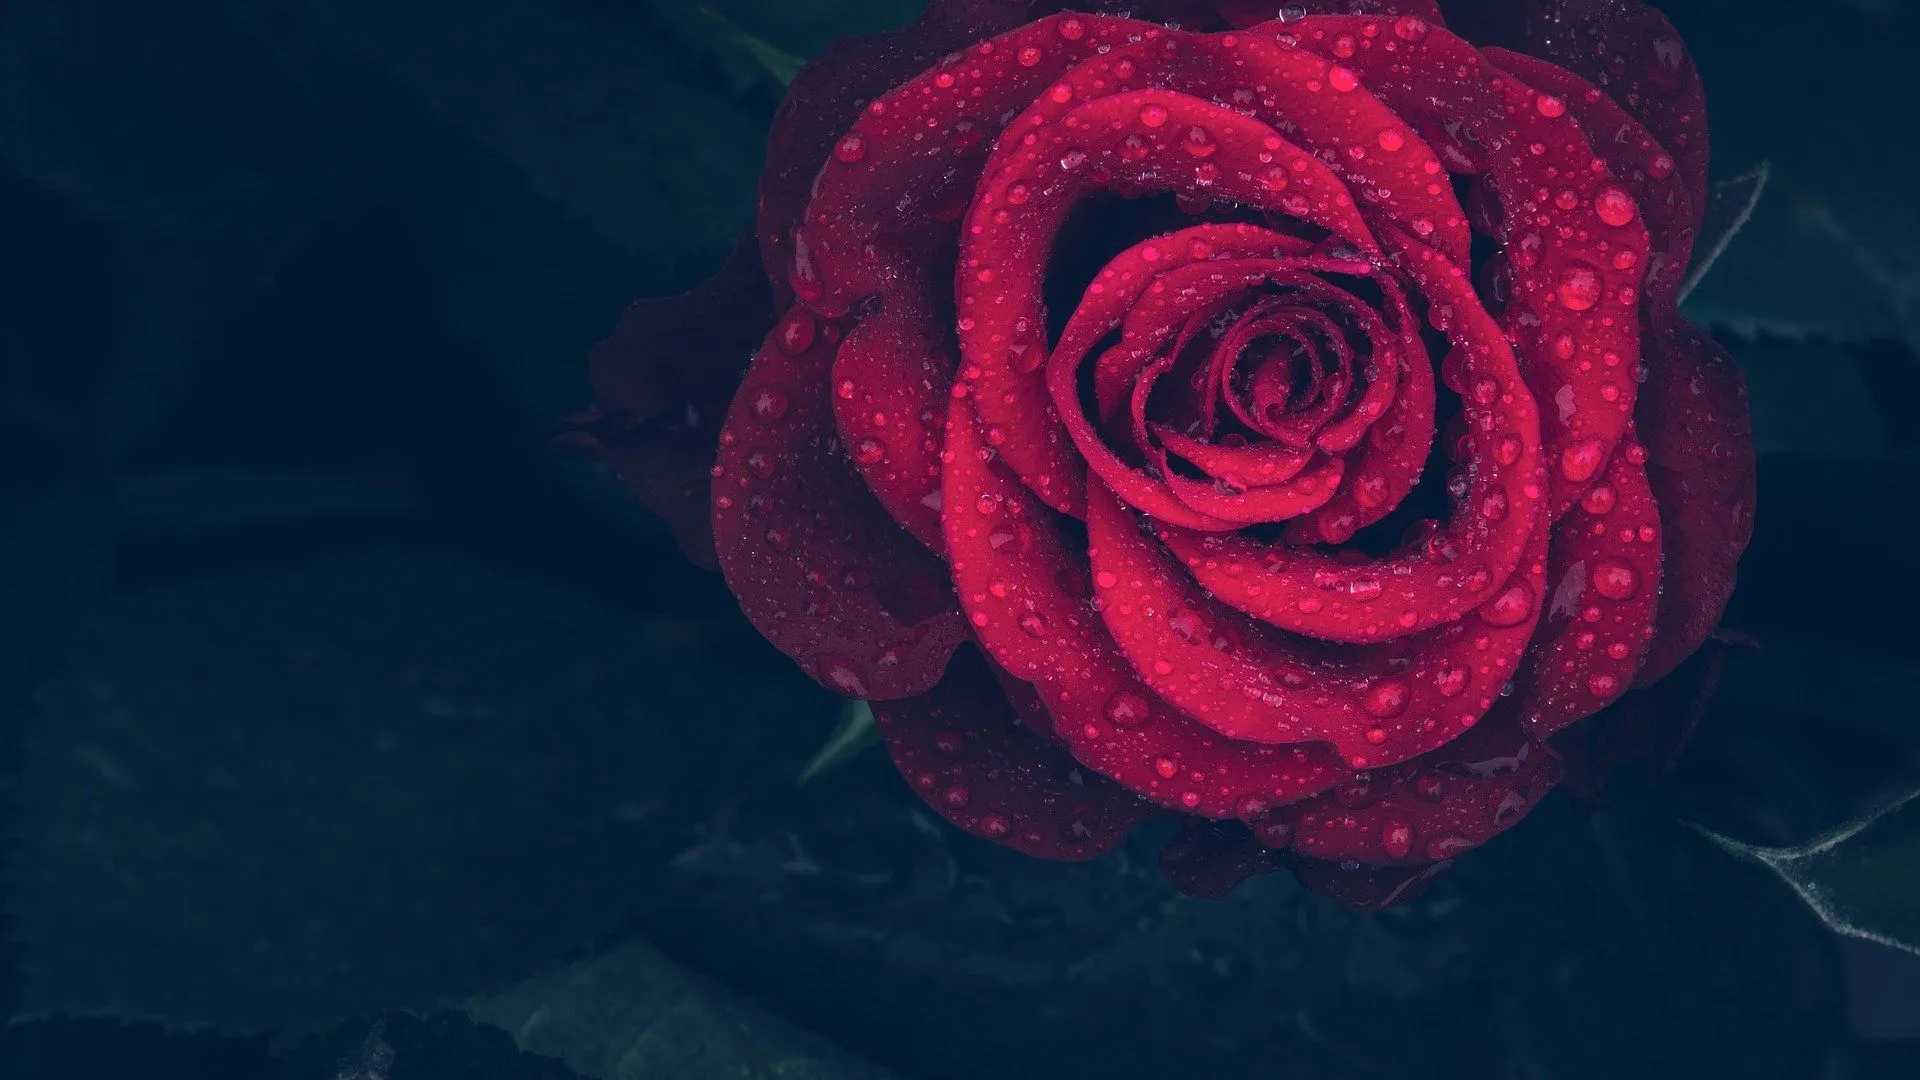 Red rose species belong to the genus Rosa.